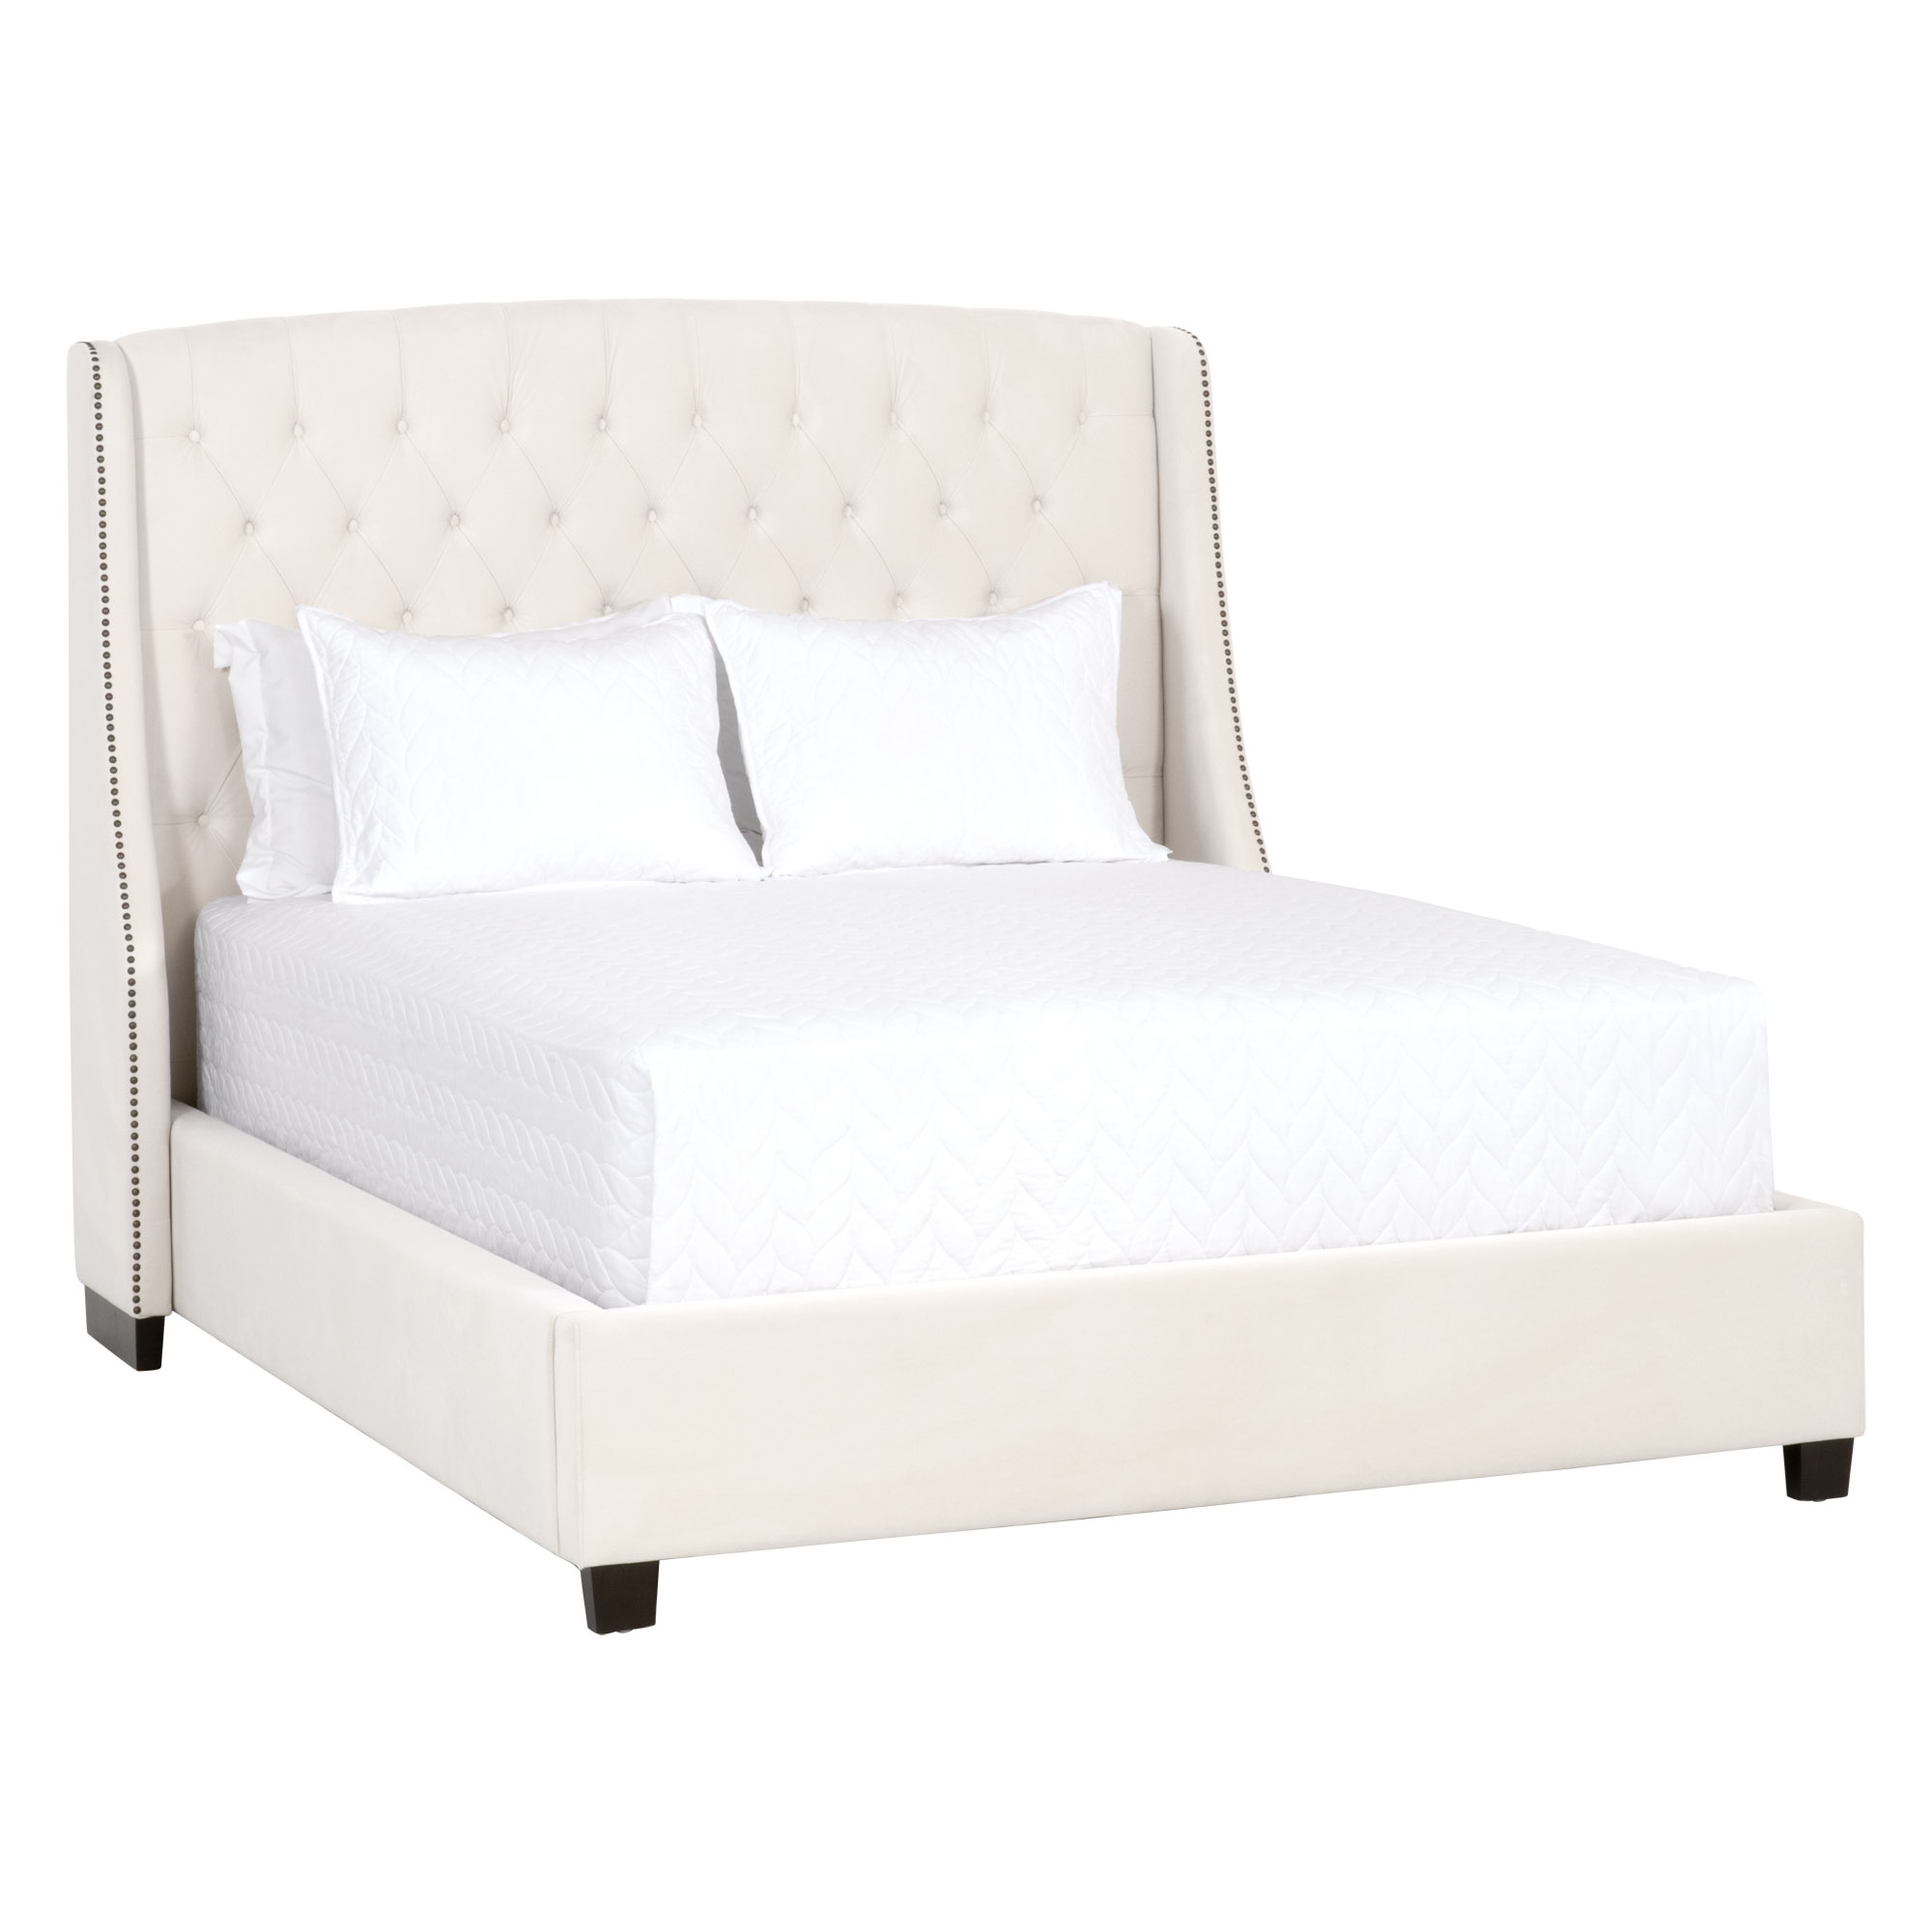 Sloan Queen Bed - Image 1